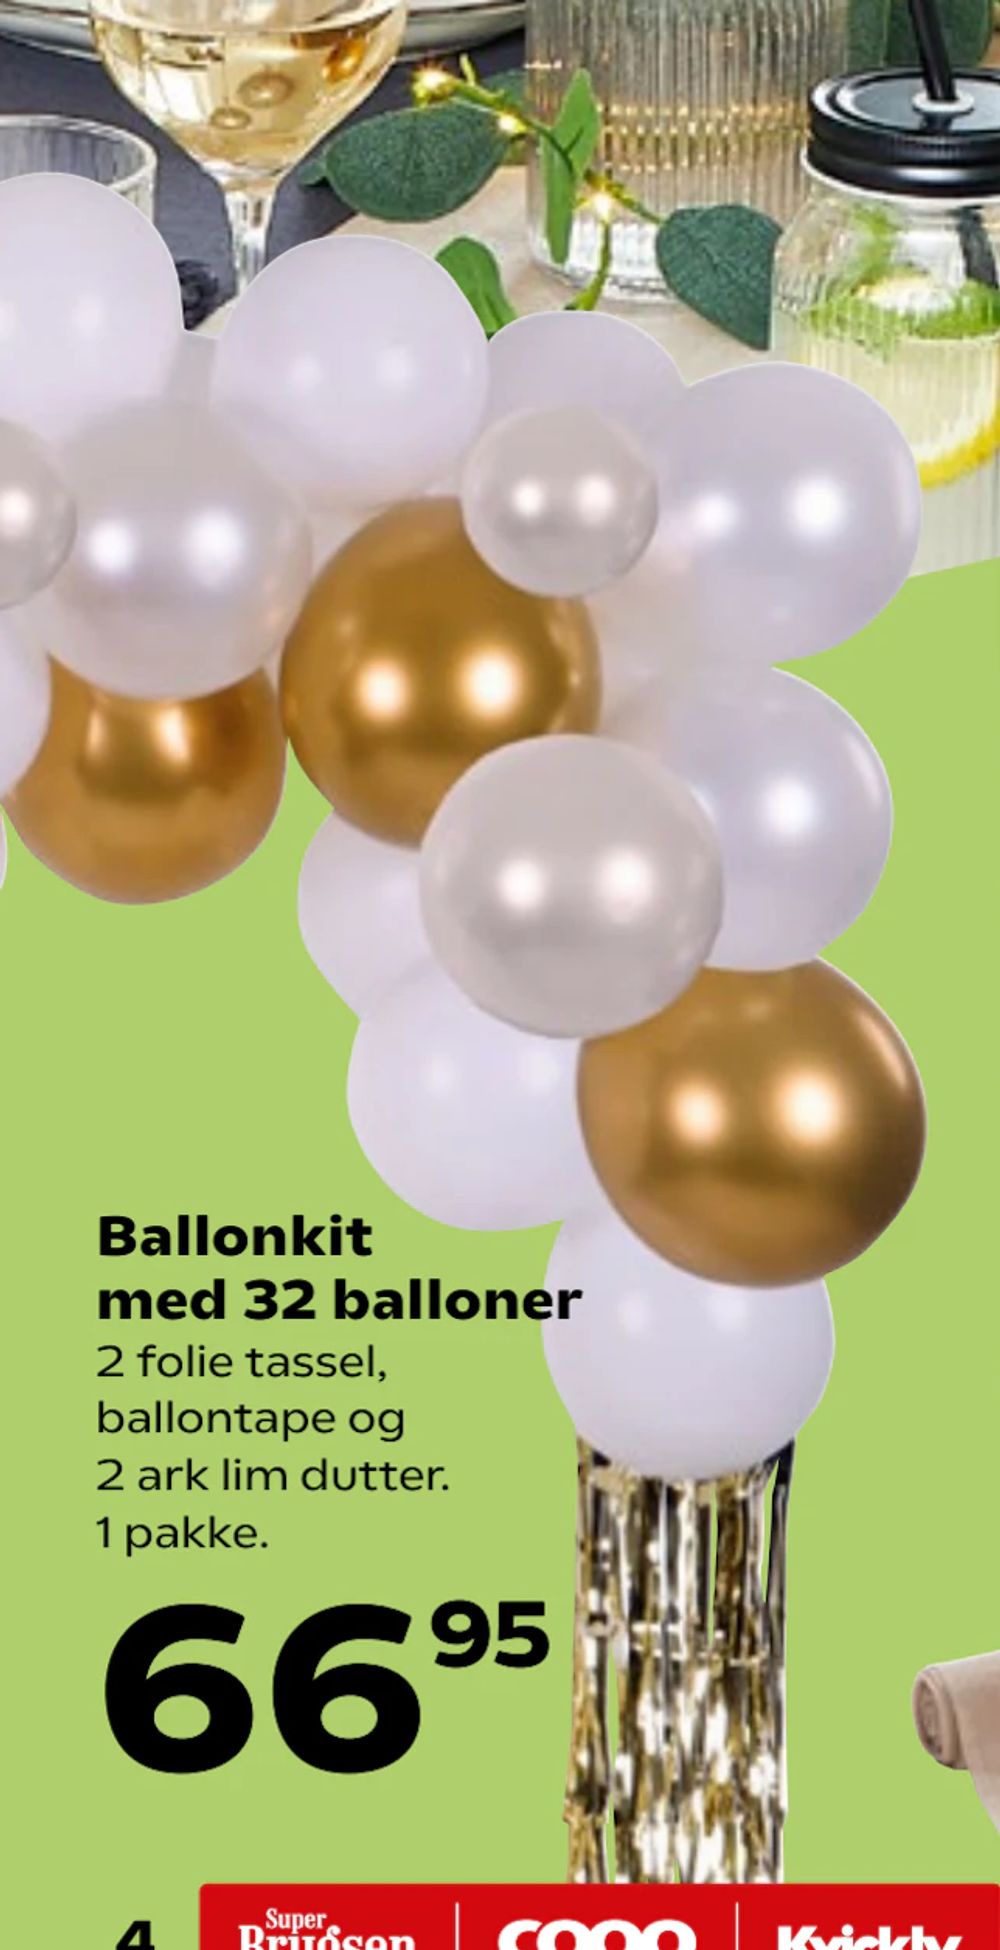 Tilbud på Ballonkit med 32 balloner fra SuperBrugsen til 66,95 kr.